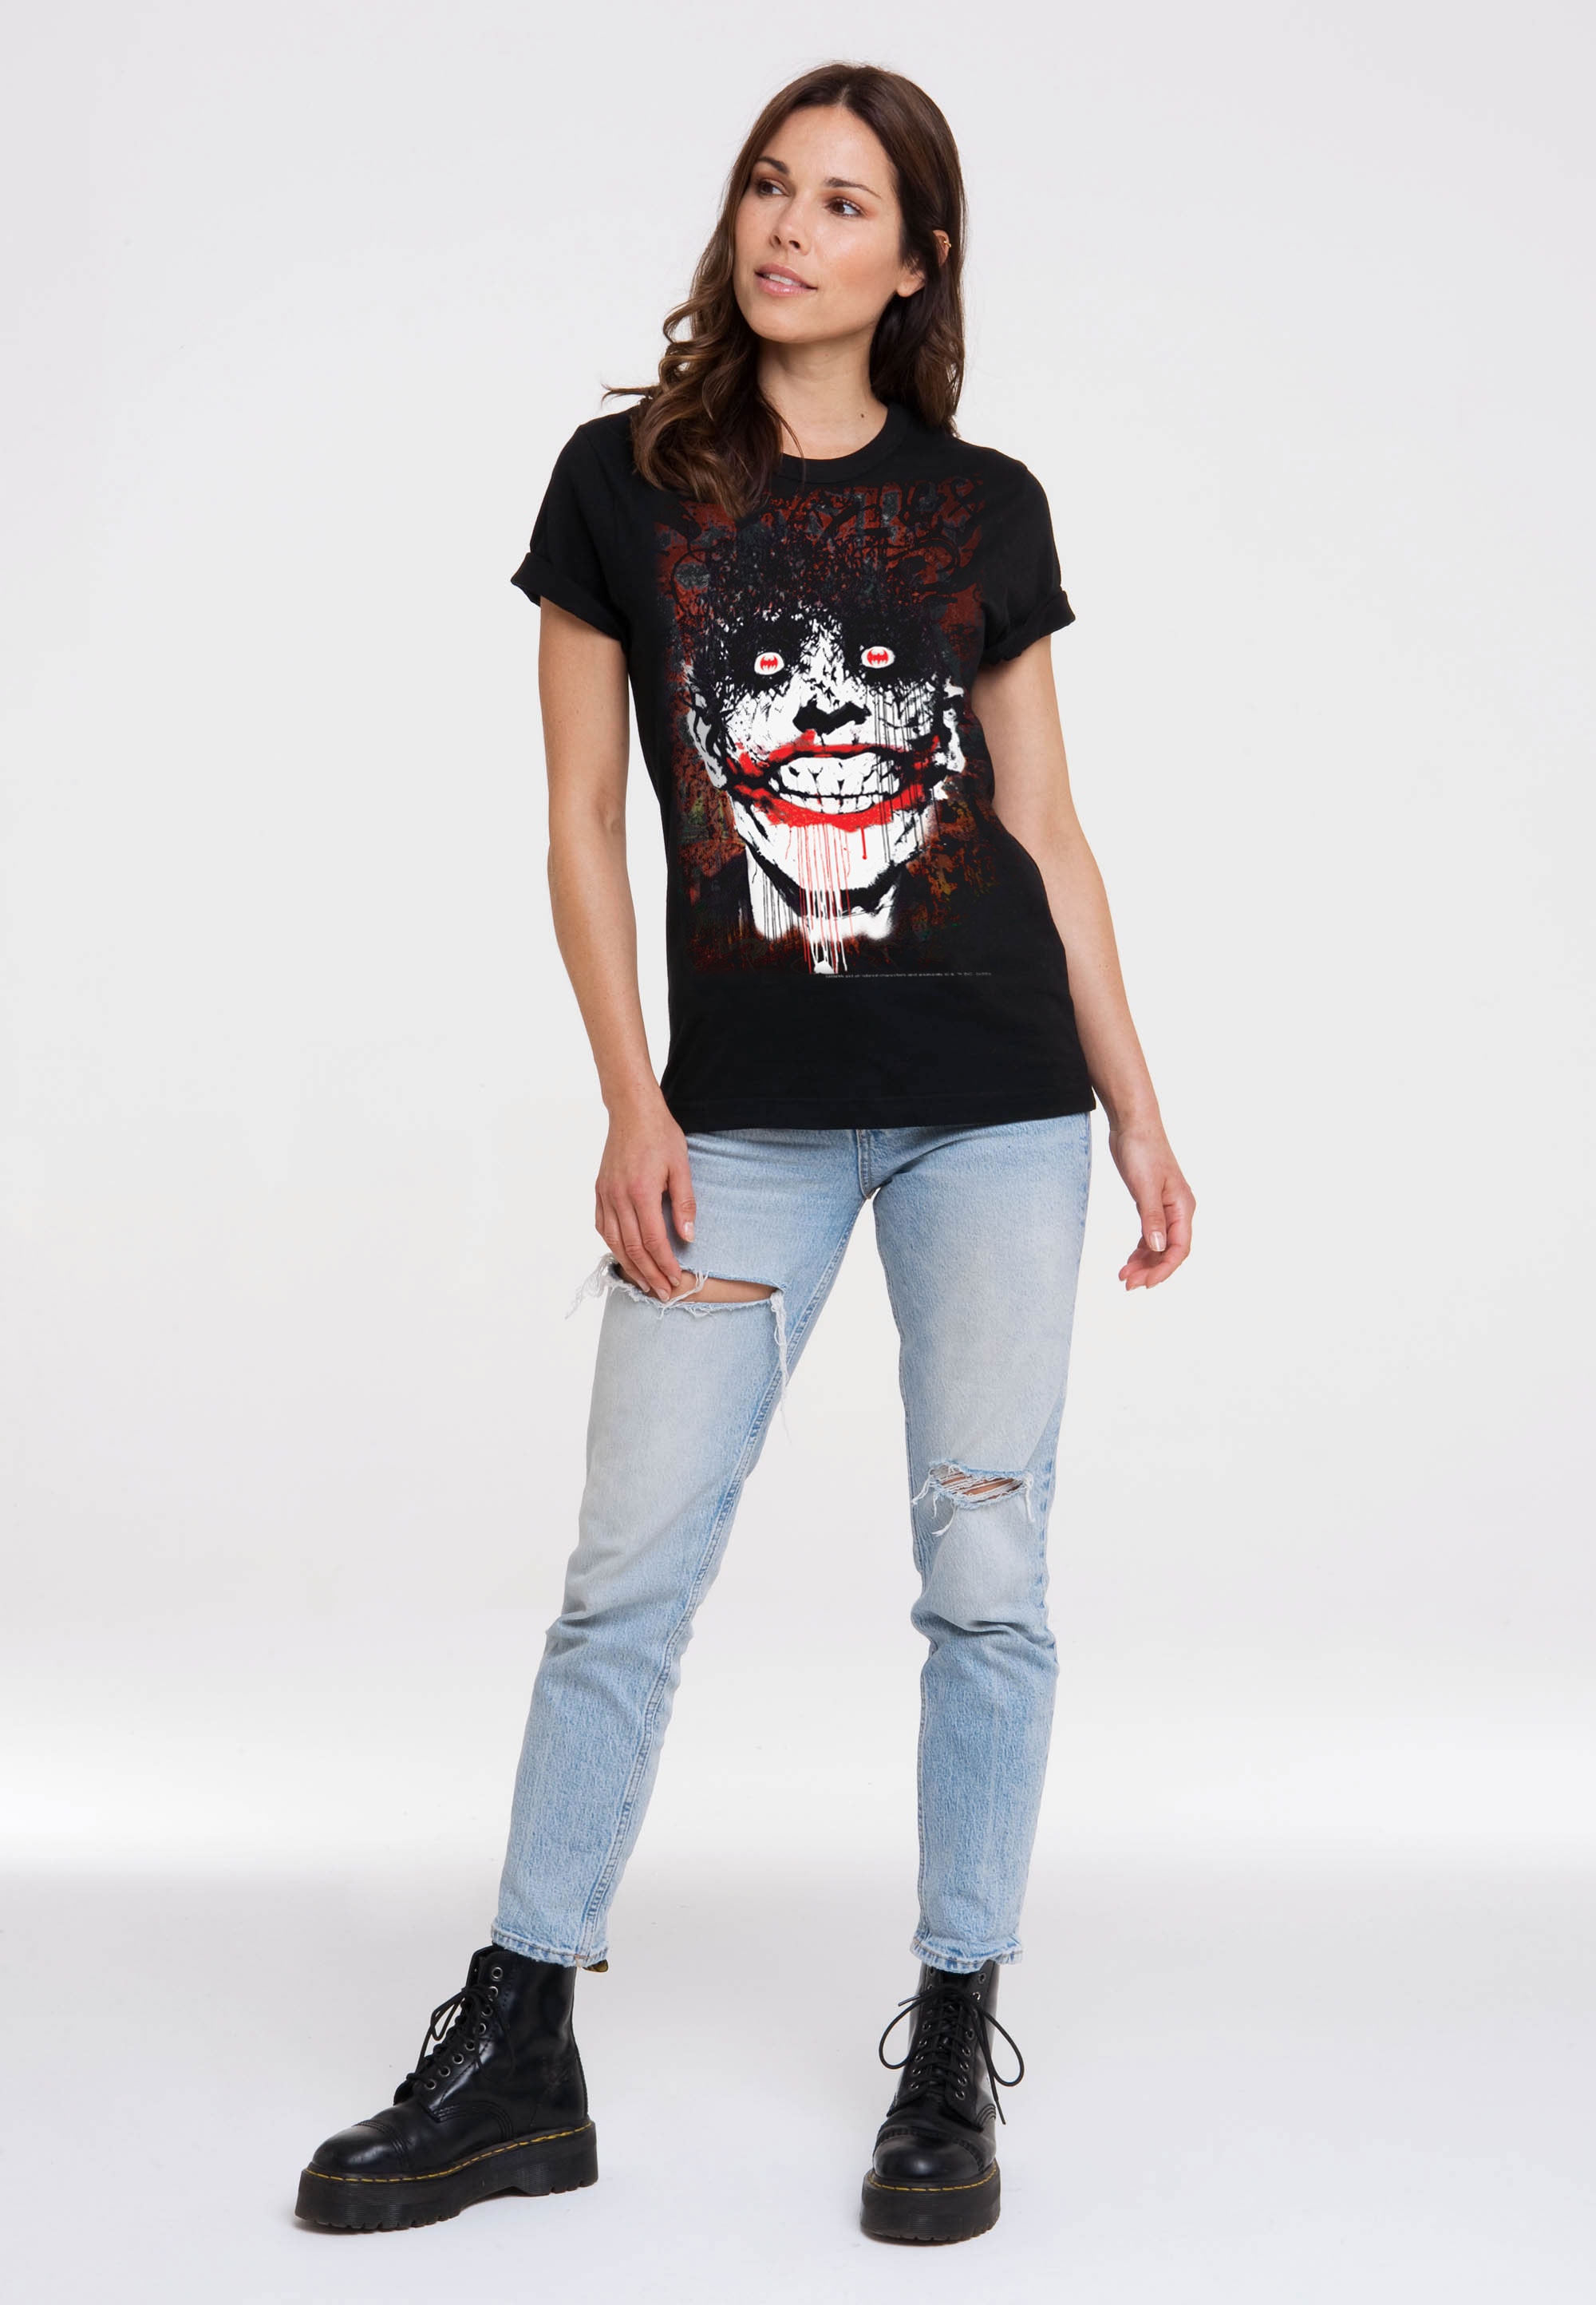 LOGOSHIRT T-Shirt »Batman - Joker Bats Graffiti«, mit coolem Superschurken-Print